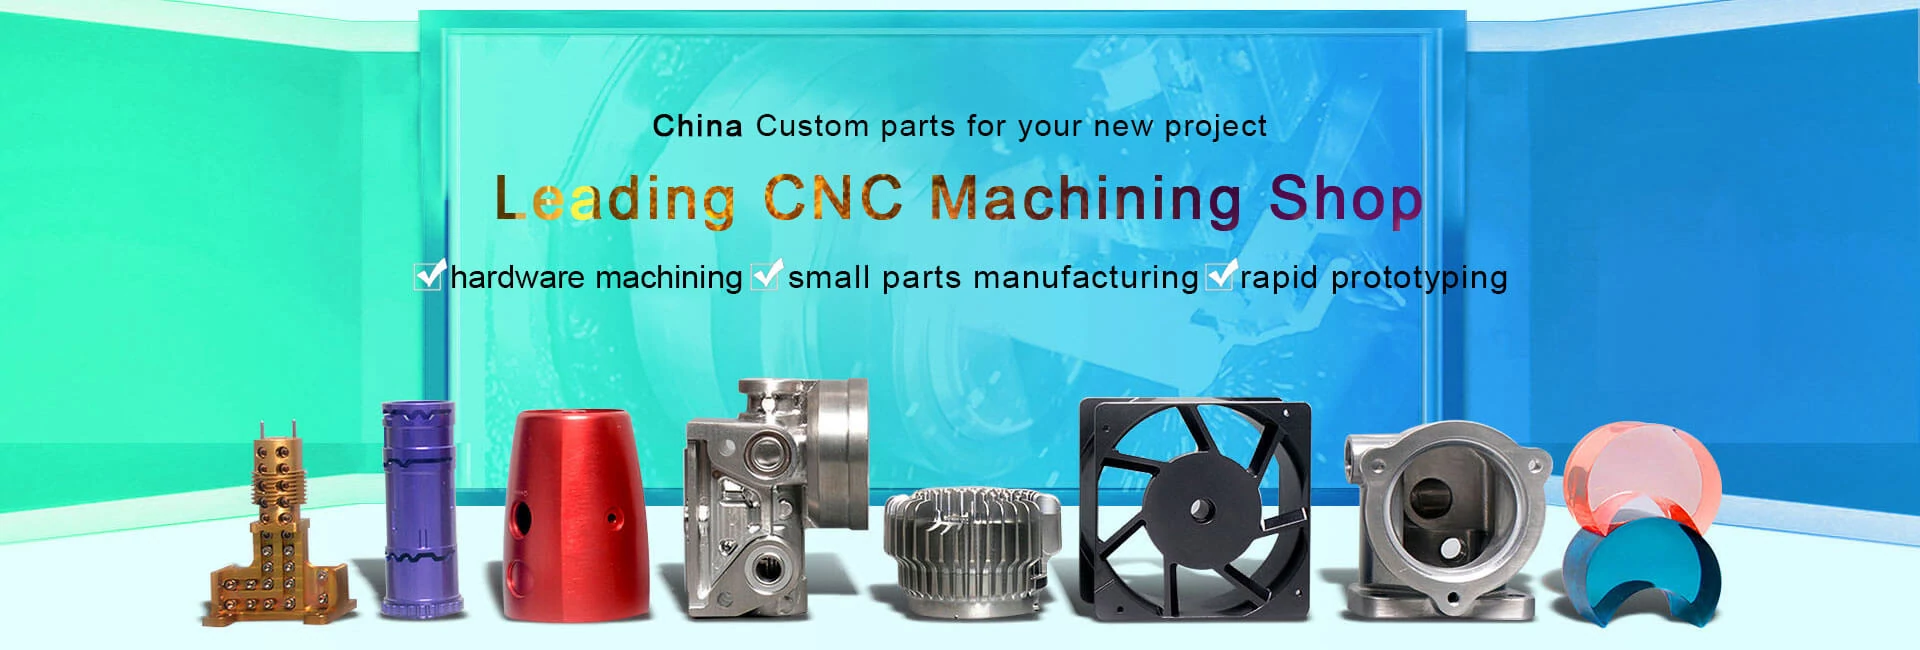 Cnc Manufacturing Blog